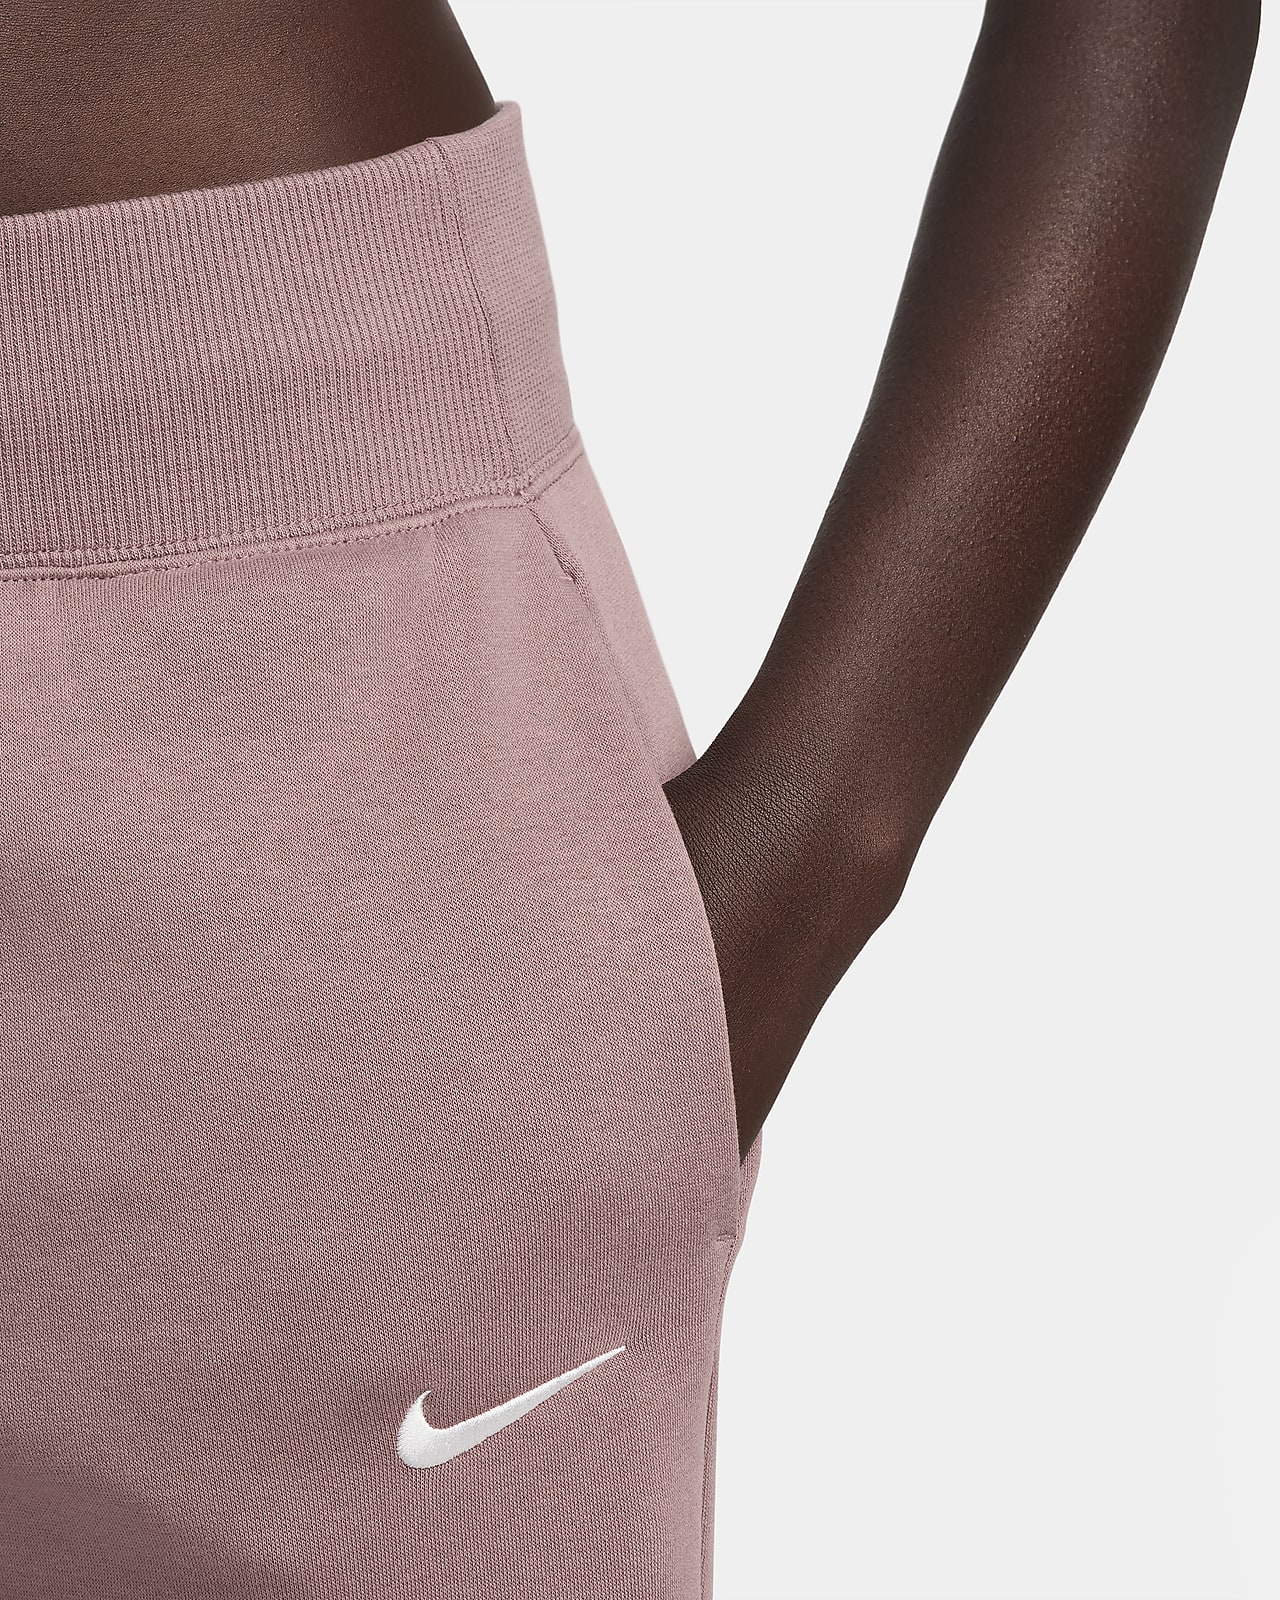 Survêtements Nike pour femme, Réductions en ligne jusqu'à 40 %